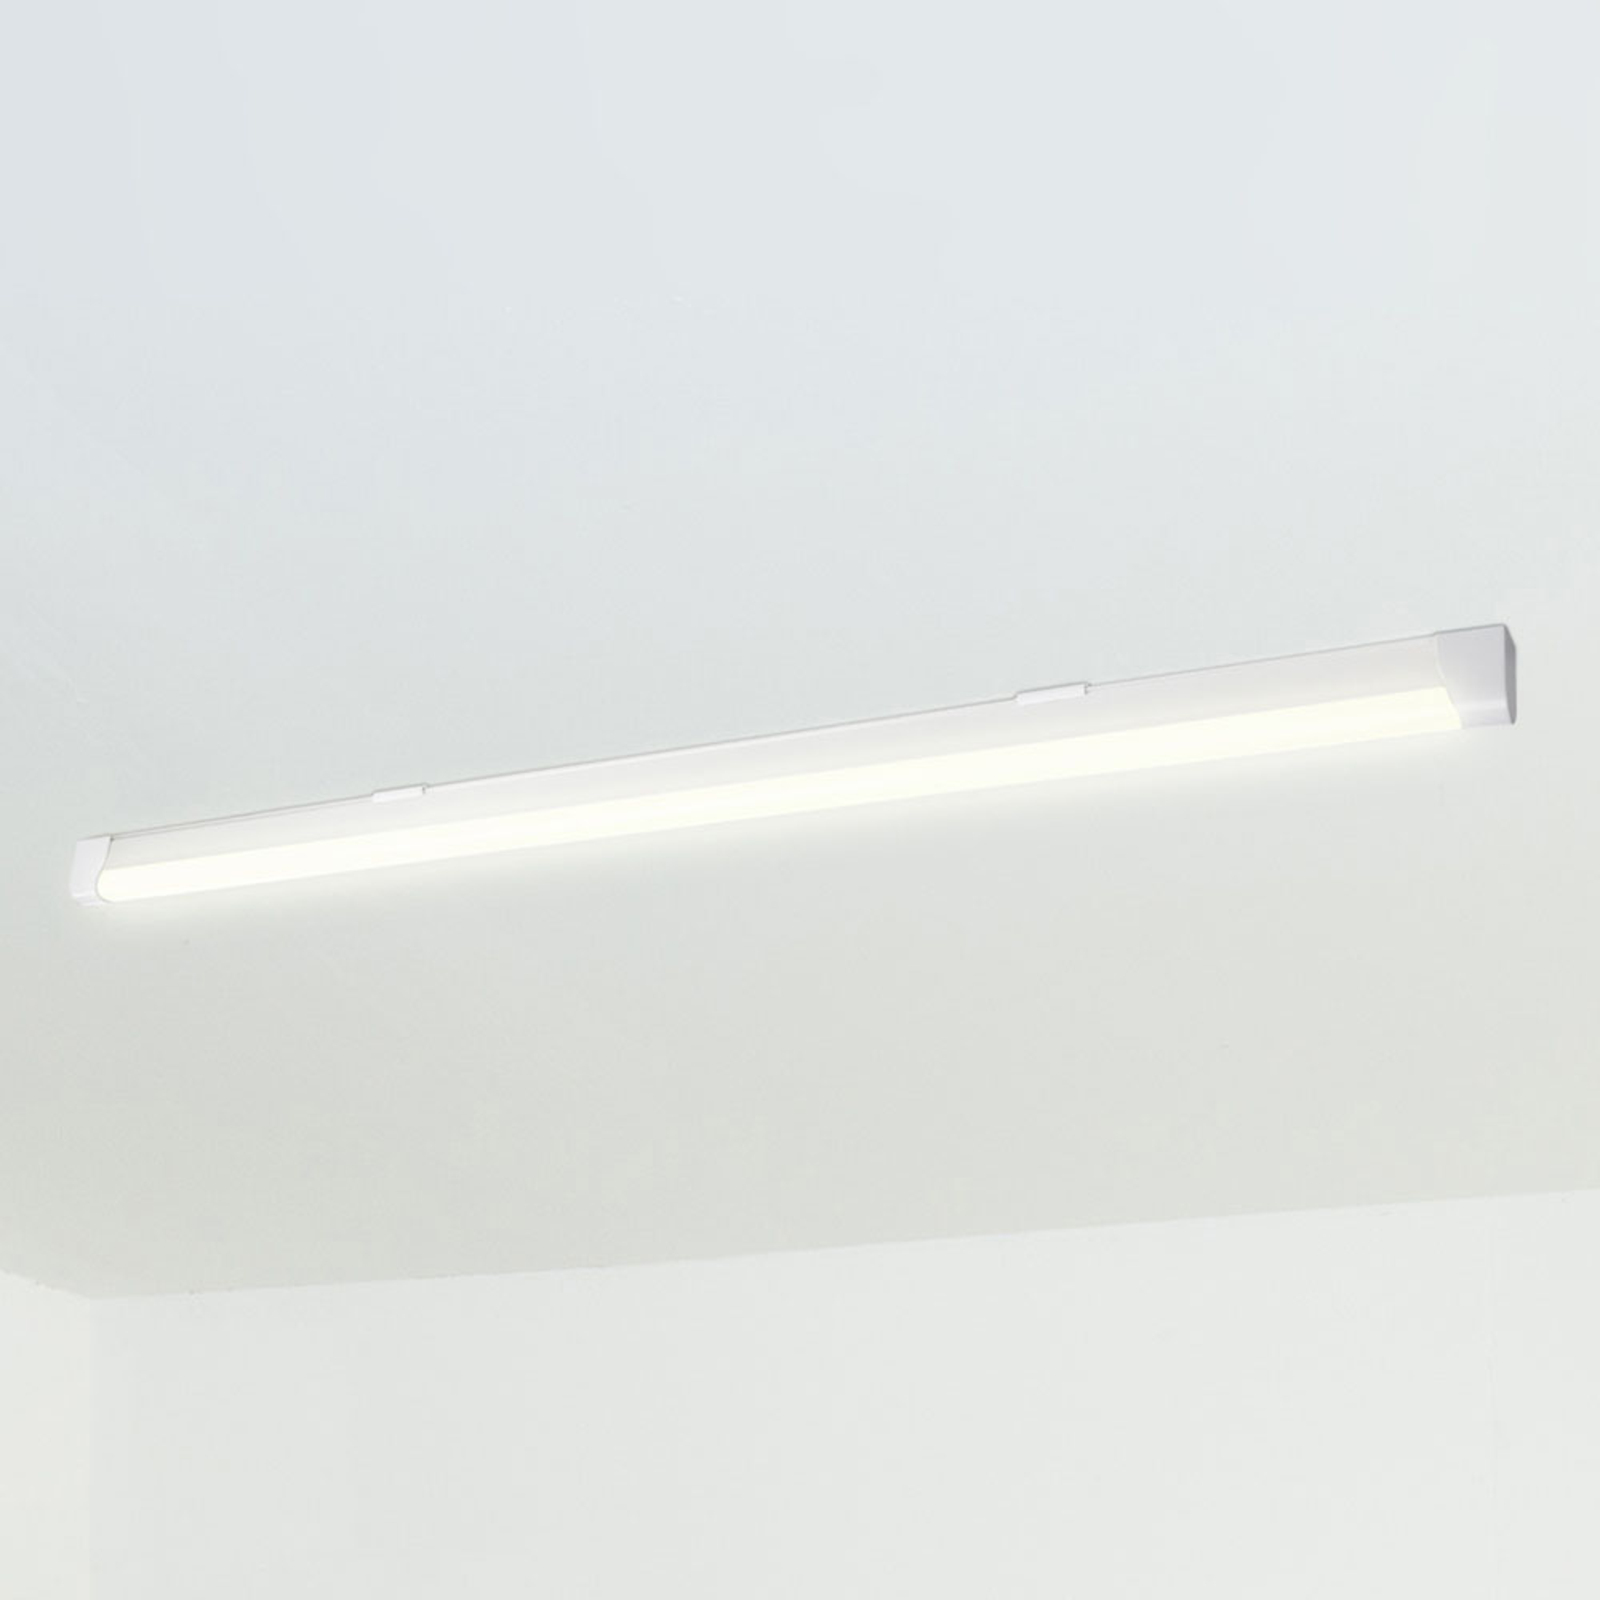 Müller Licht Ecoline 120 LED stropní světlo